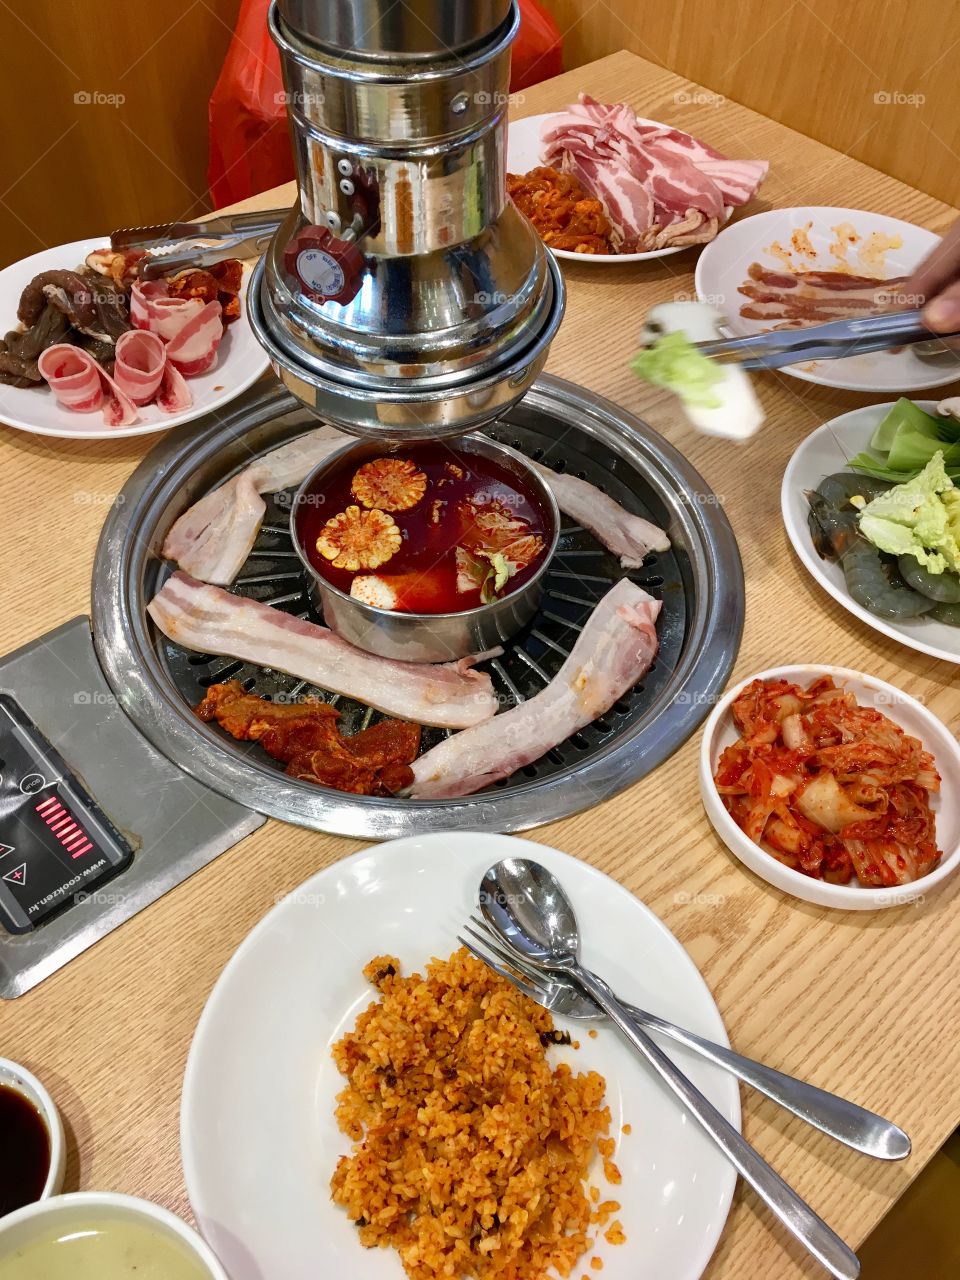 Korean BBQ buffet